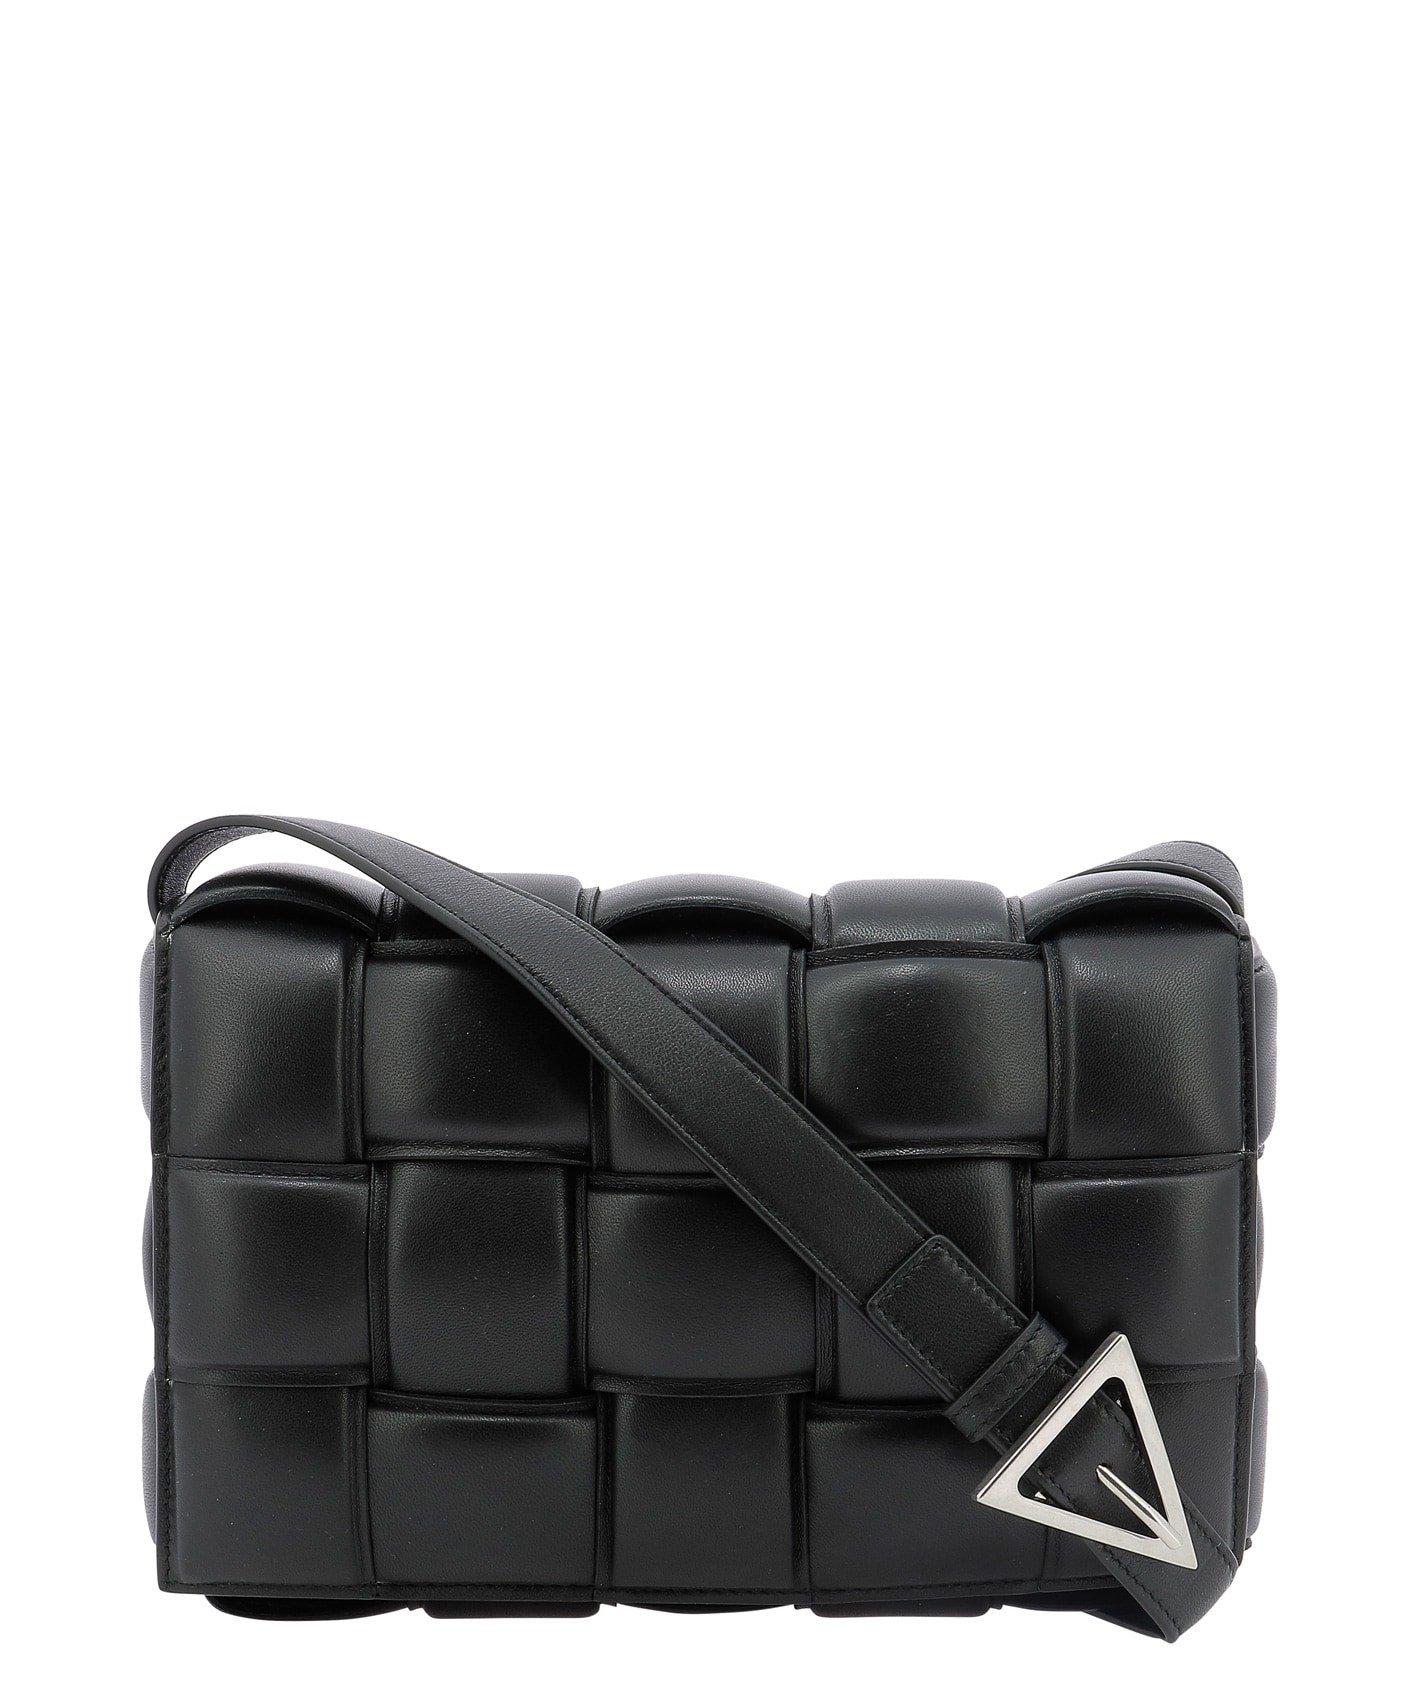 Bottega Veneta Leather Padded Cassette Bag in Black - Save 48% - Lyst